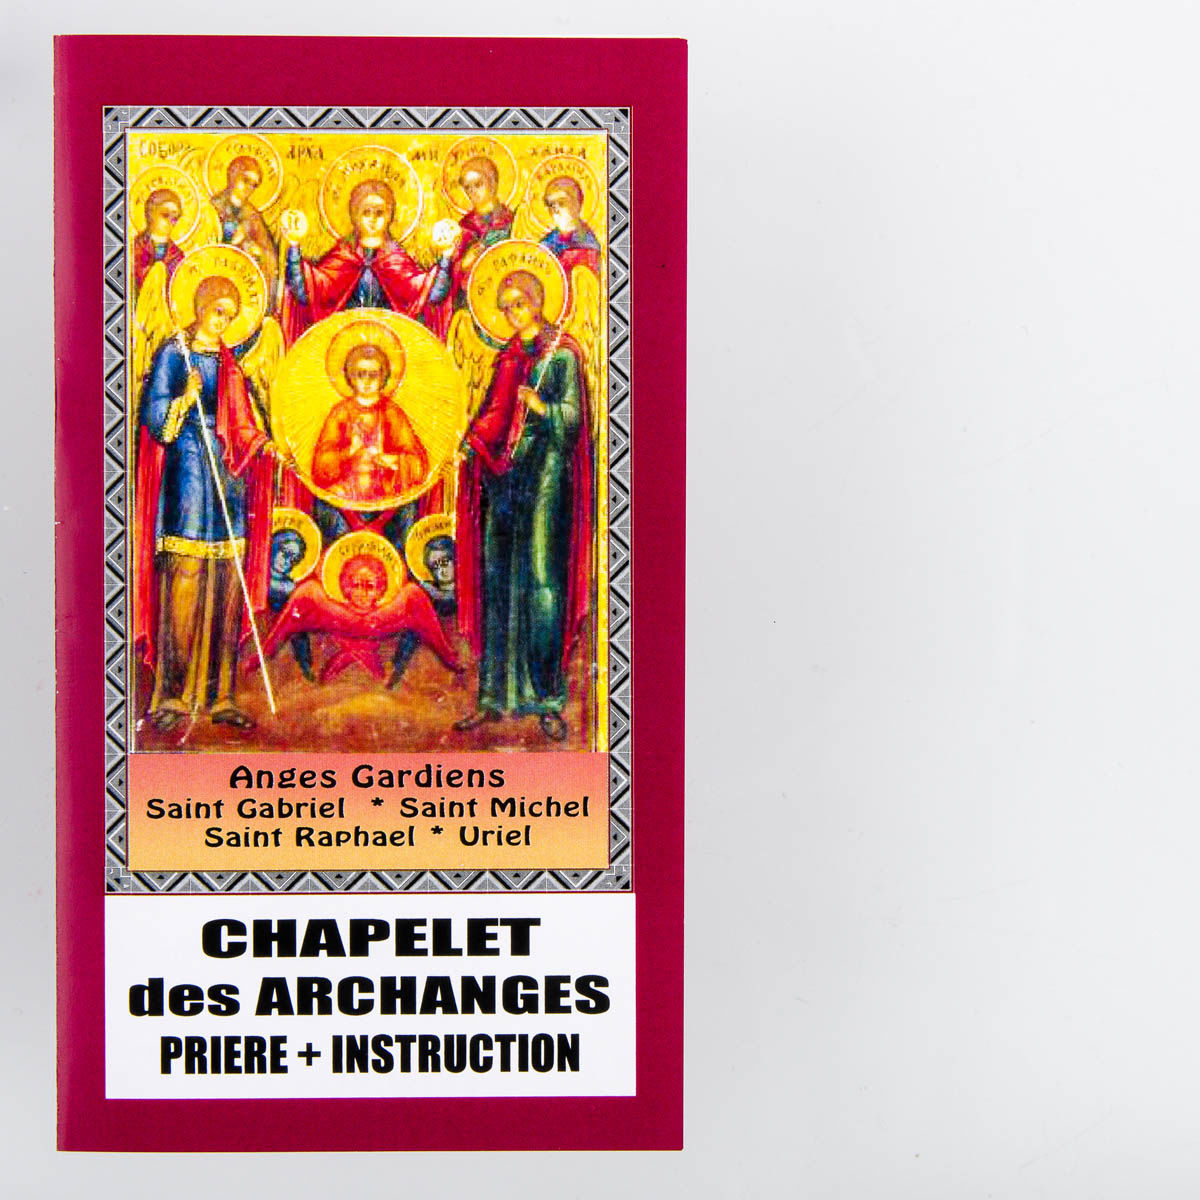 Chapelet de dévotion des archanges avec notice explicative, livré en sachet individuel.